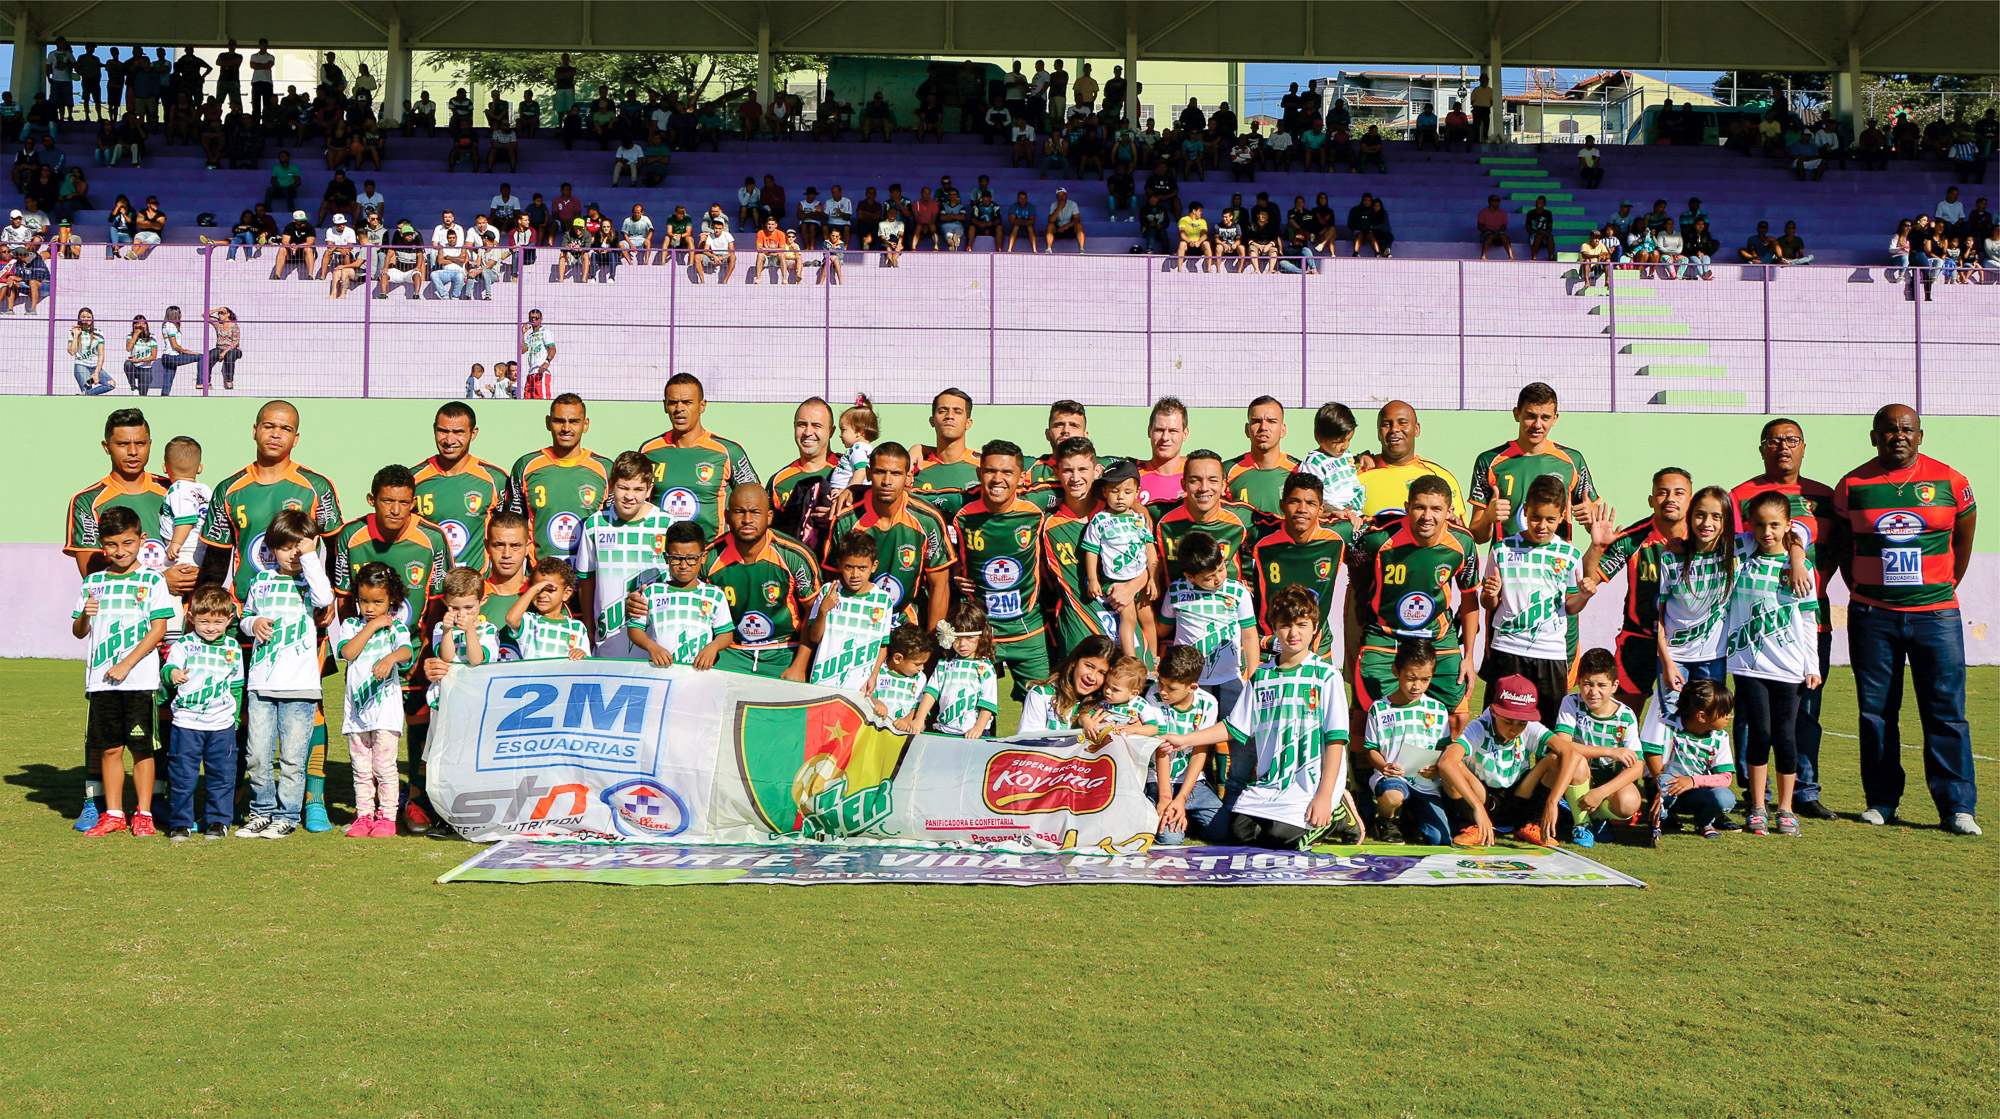 notícia Super FC vence Vila Telamar e conquista título de bicampeão da ‘primeirona’